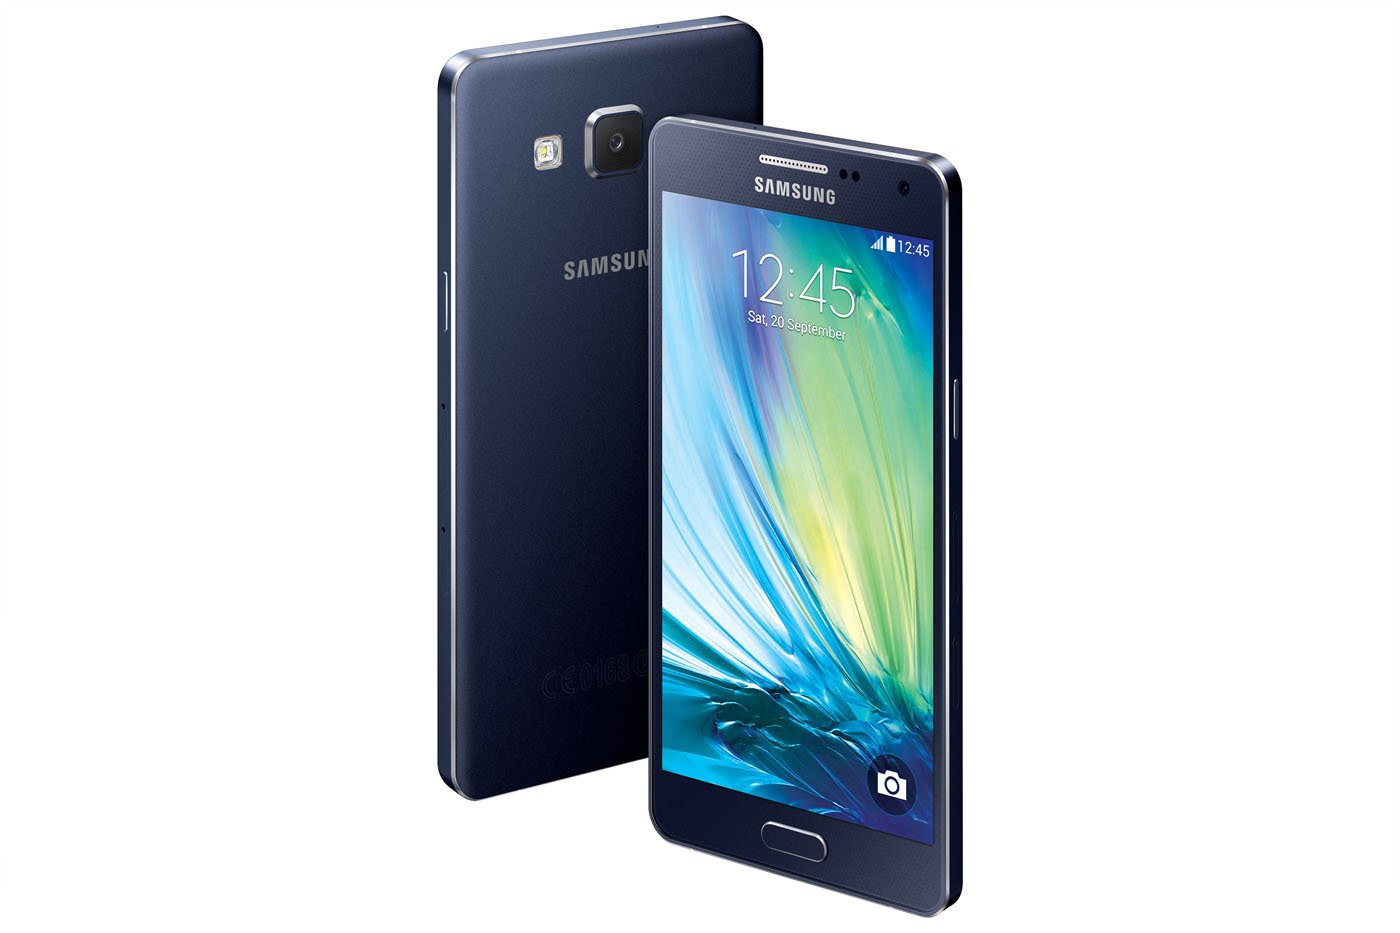 ontploffing Spuug uit Nutteloos Samsung Galaxy A5 specs, review, release date - PhonesData